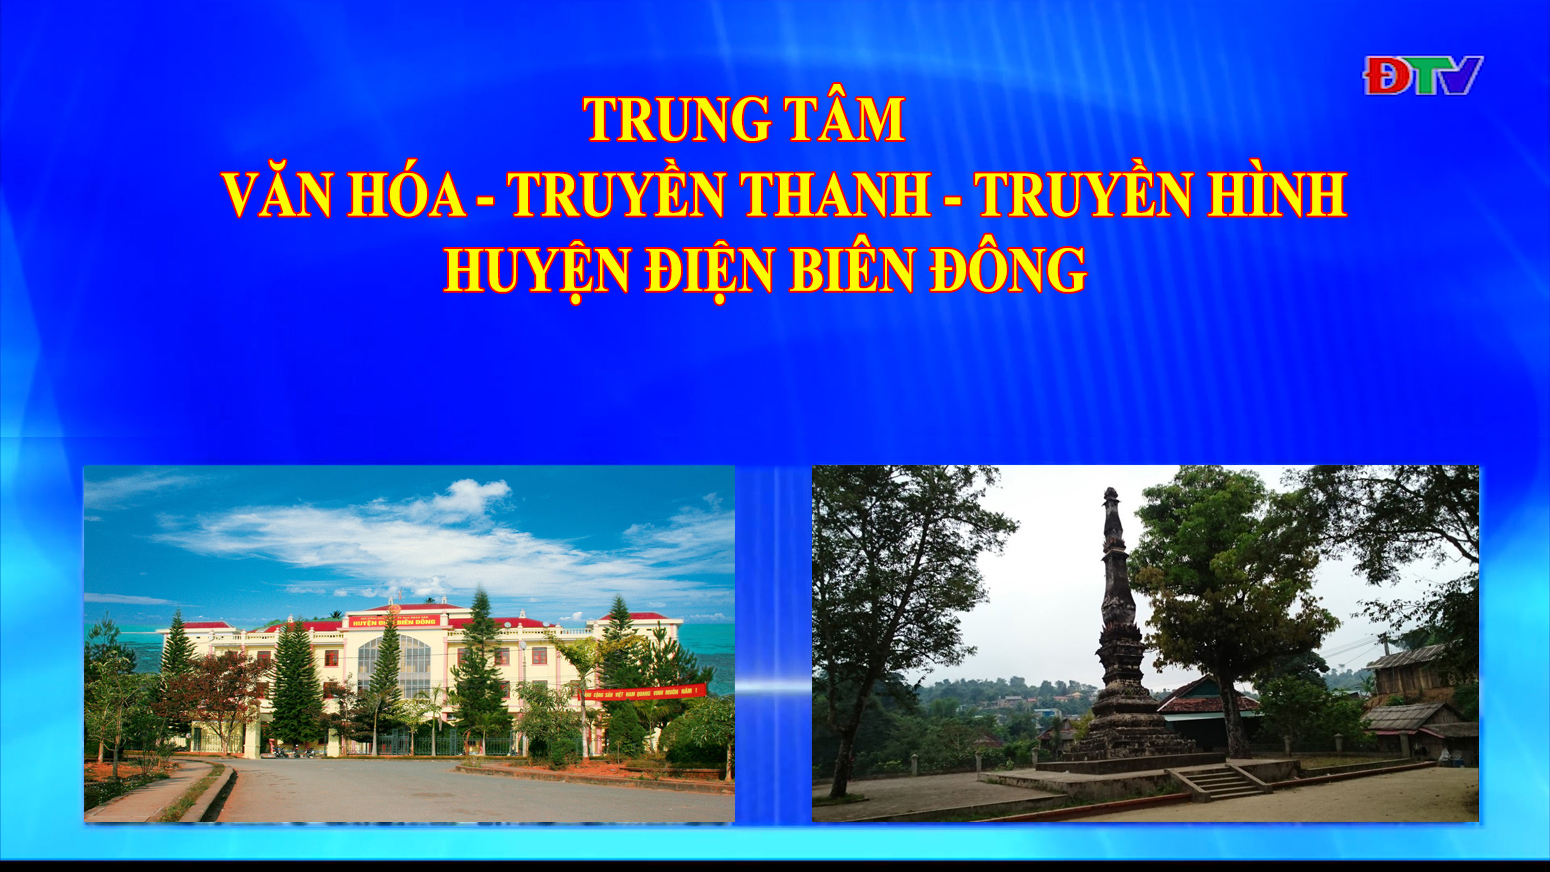 Trung tâm VH-TTTH huyện Điện Biên Đông (Ngày 1-5-2021)